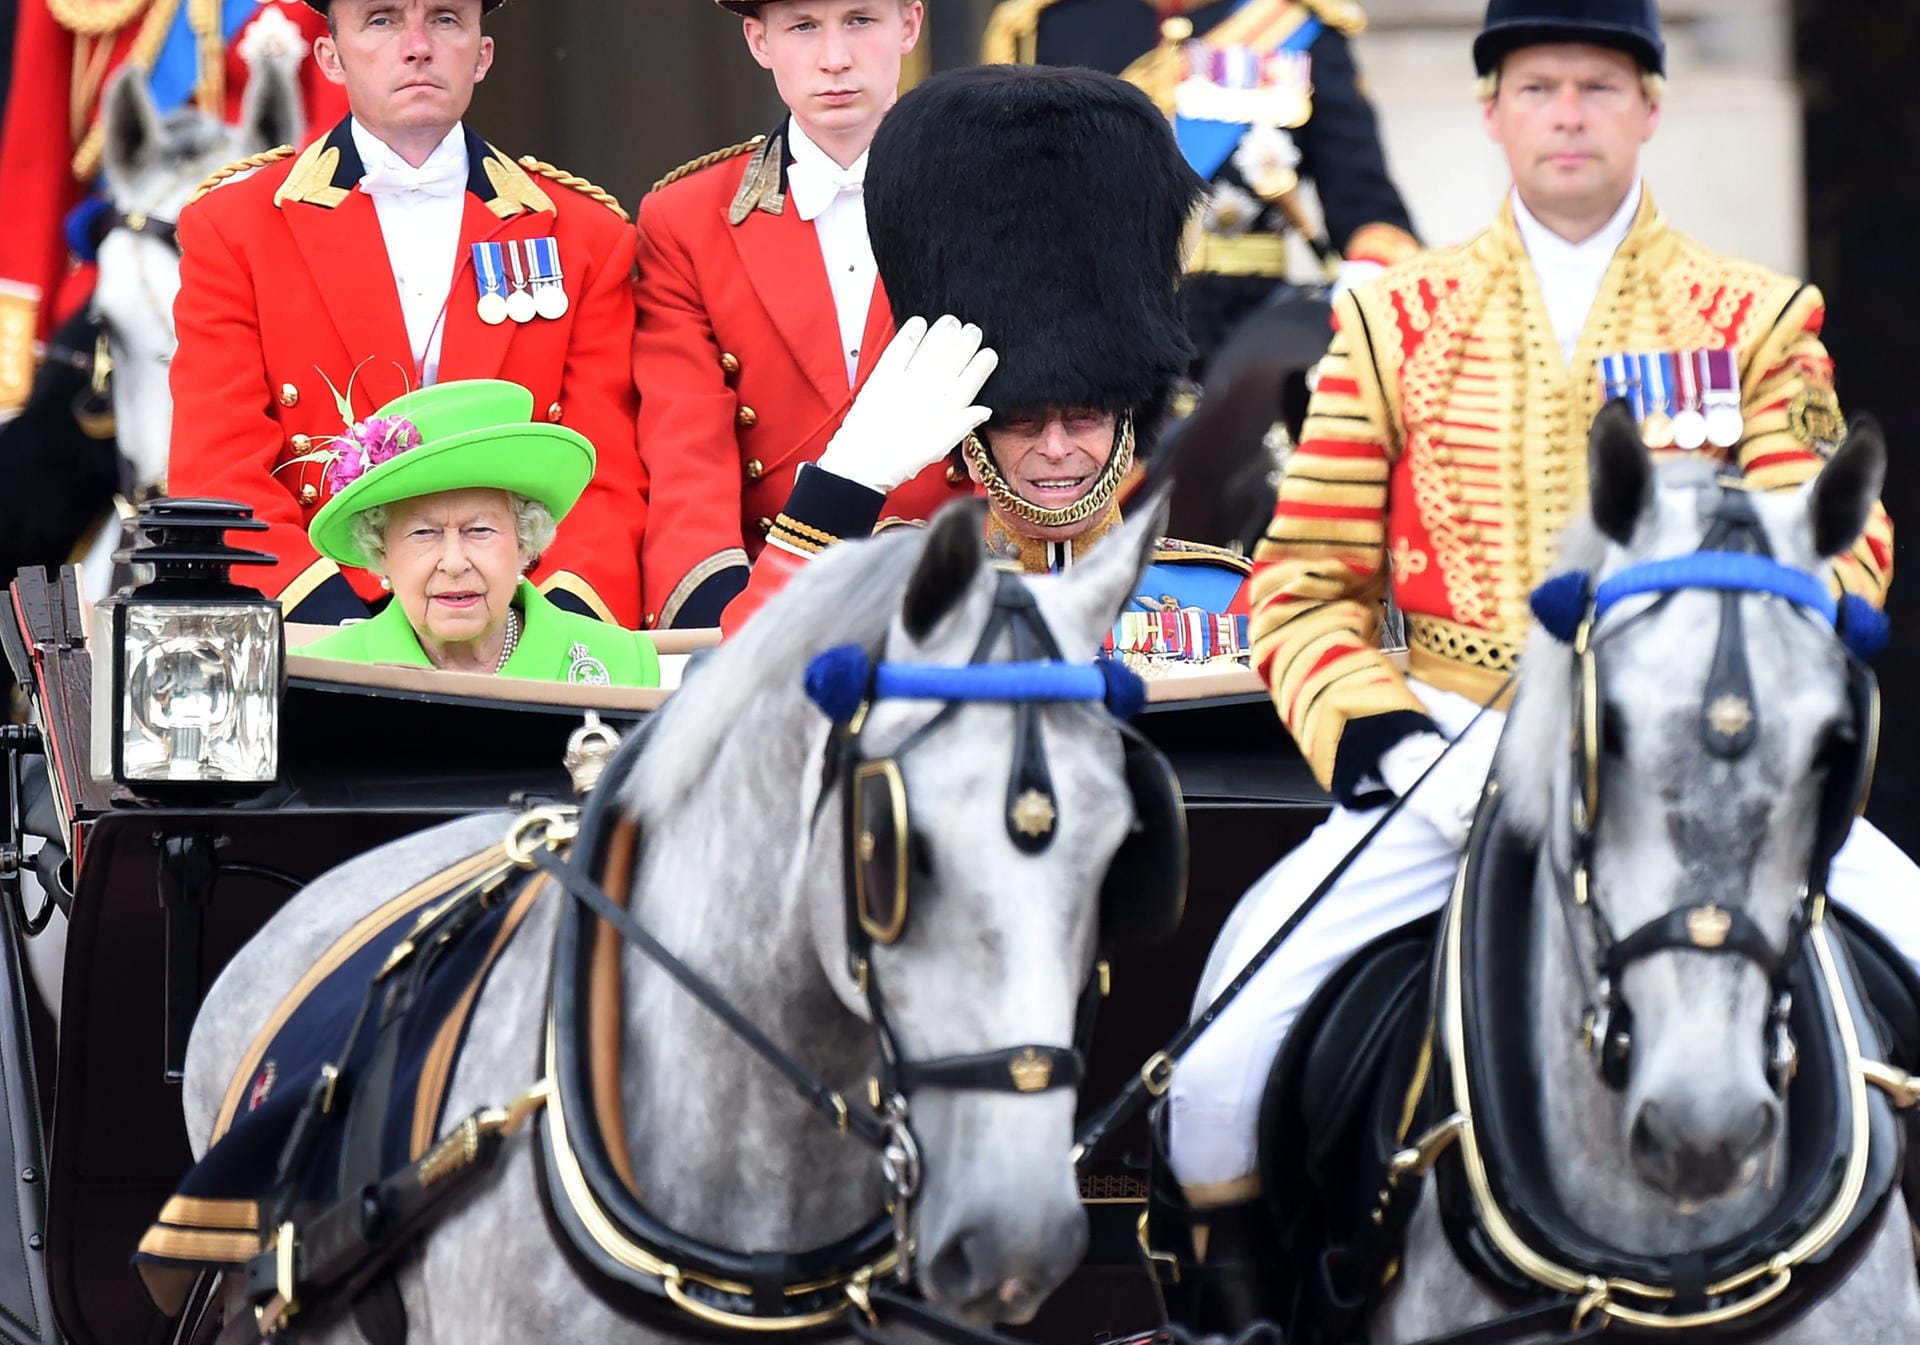 Trooping the Color Queen's 90th birthday parade in LondonAm Samstag findet die große Militärparade "Trooping the Colur" zu Ehren des 90. Geburtstags der britischen Königin im Herzen Londons statt. Hier fahren die Queen und Prinz Philip gerade offenen Kutsche vom Buckingham-Palast zum großen Exerzierplatz "Horse Guards Parade".